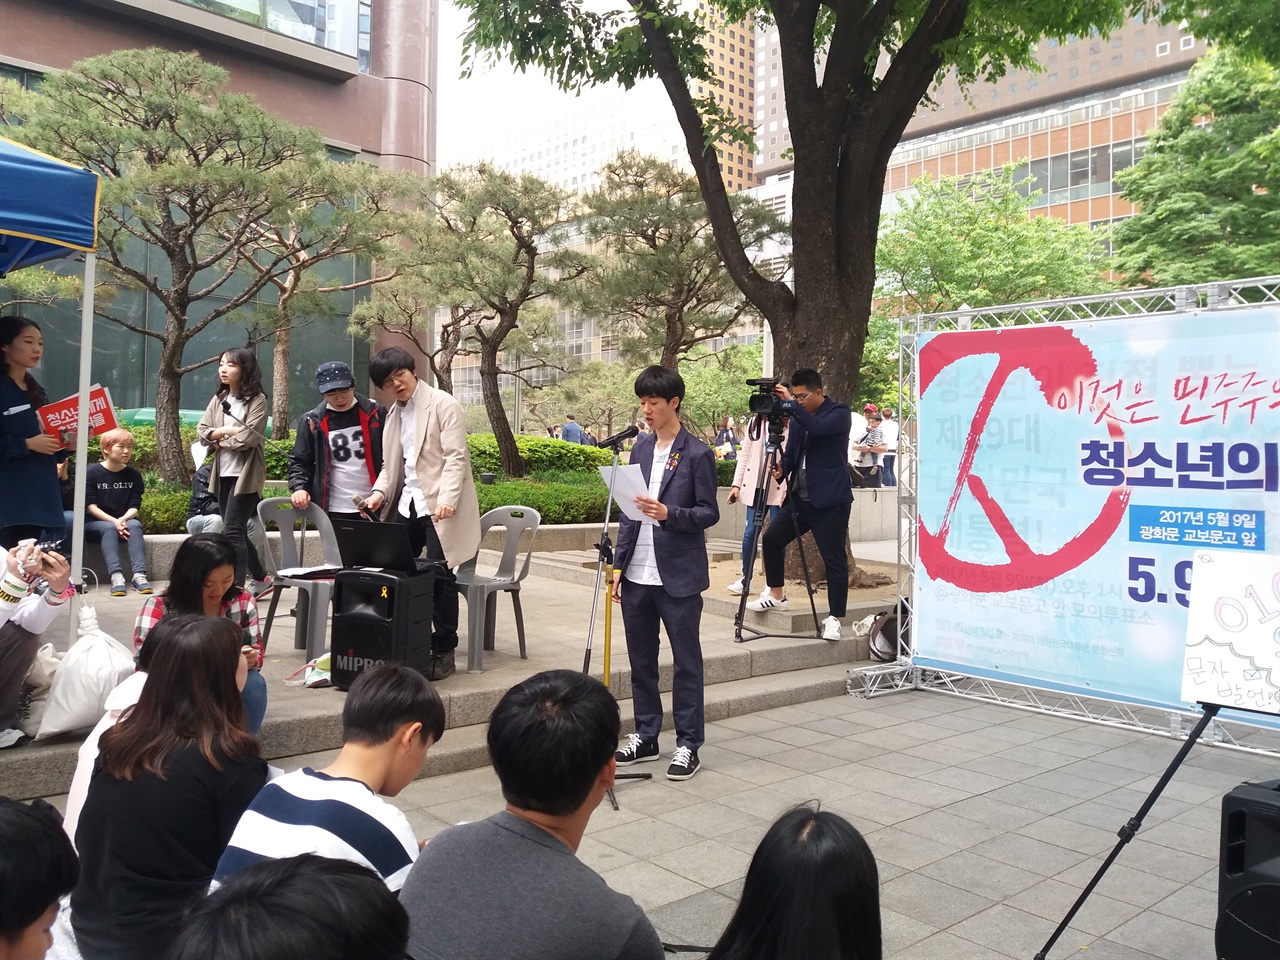 이날 열린 참가자 발언에서 청소년참여행동 비상의 문준혁씨의 발언 모습.